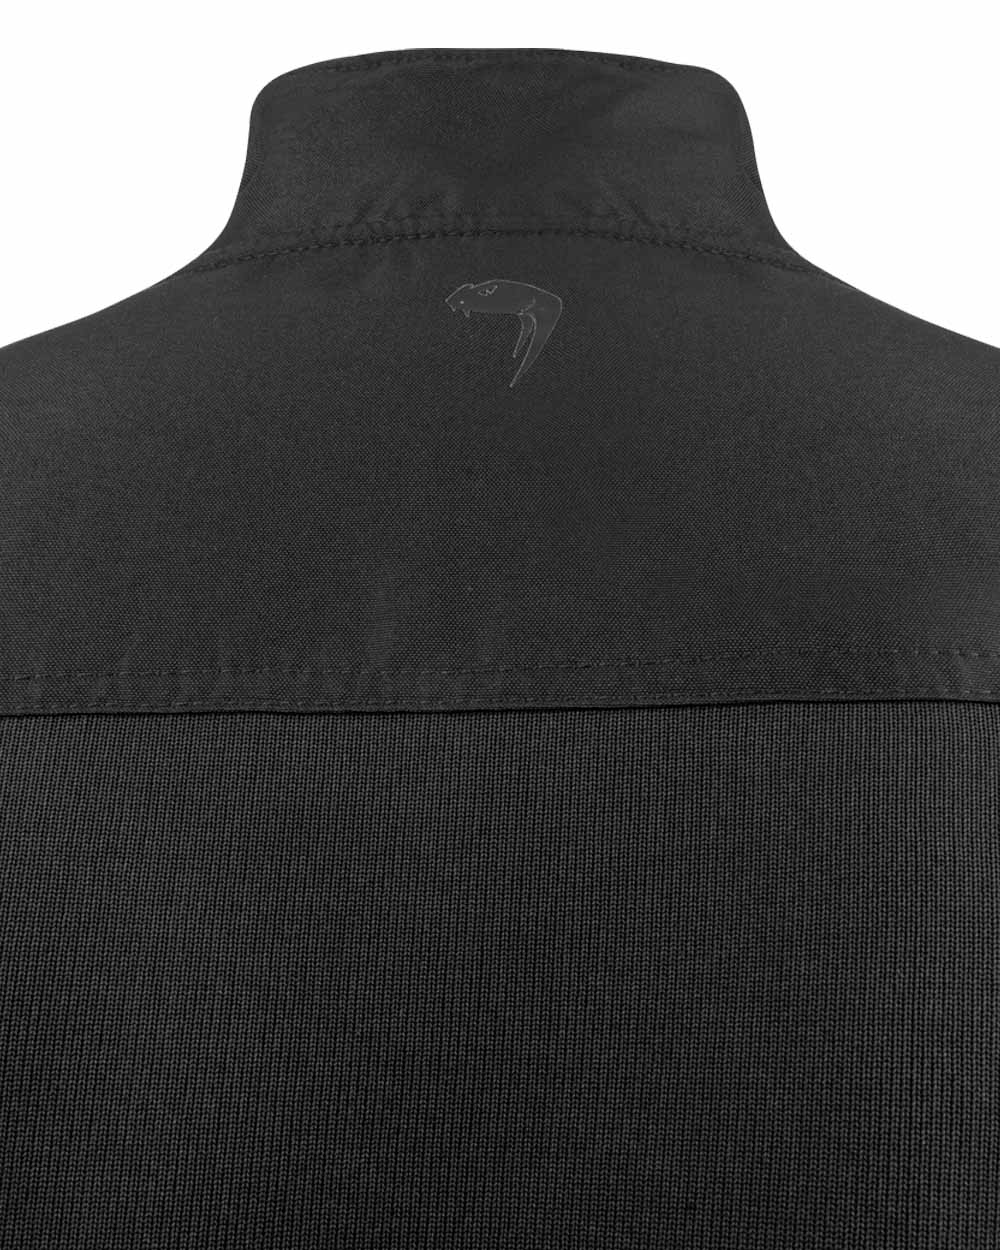 Black coloured Viper Gen 2 Spec Ops Fleece JacketViper Gen 2 Spec Ops Fleece Jacket on White background 